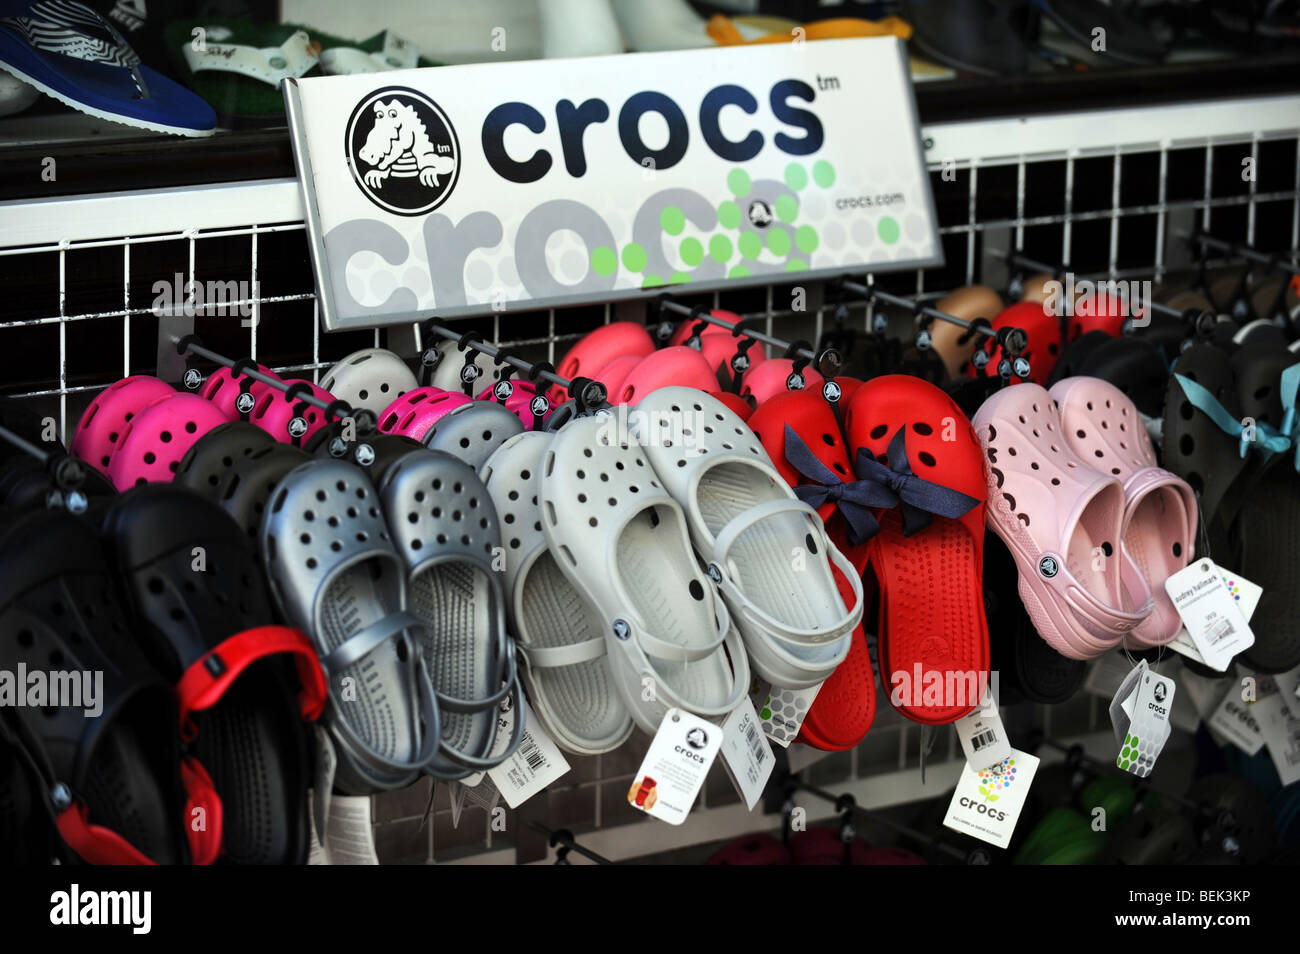 Crocs shoe immagini e fotografie stock ad alta risoluzione - Alamy